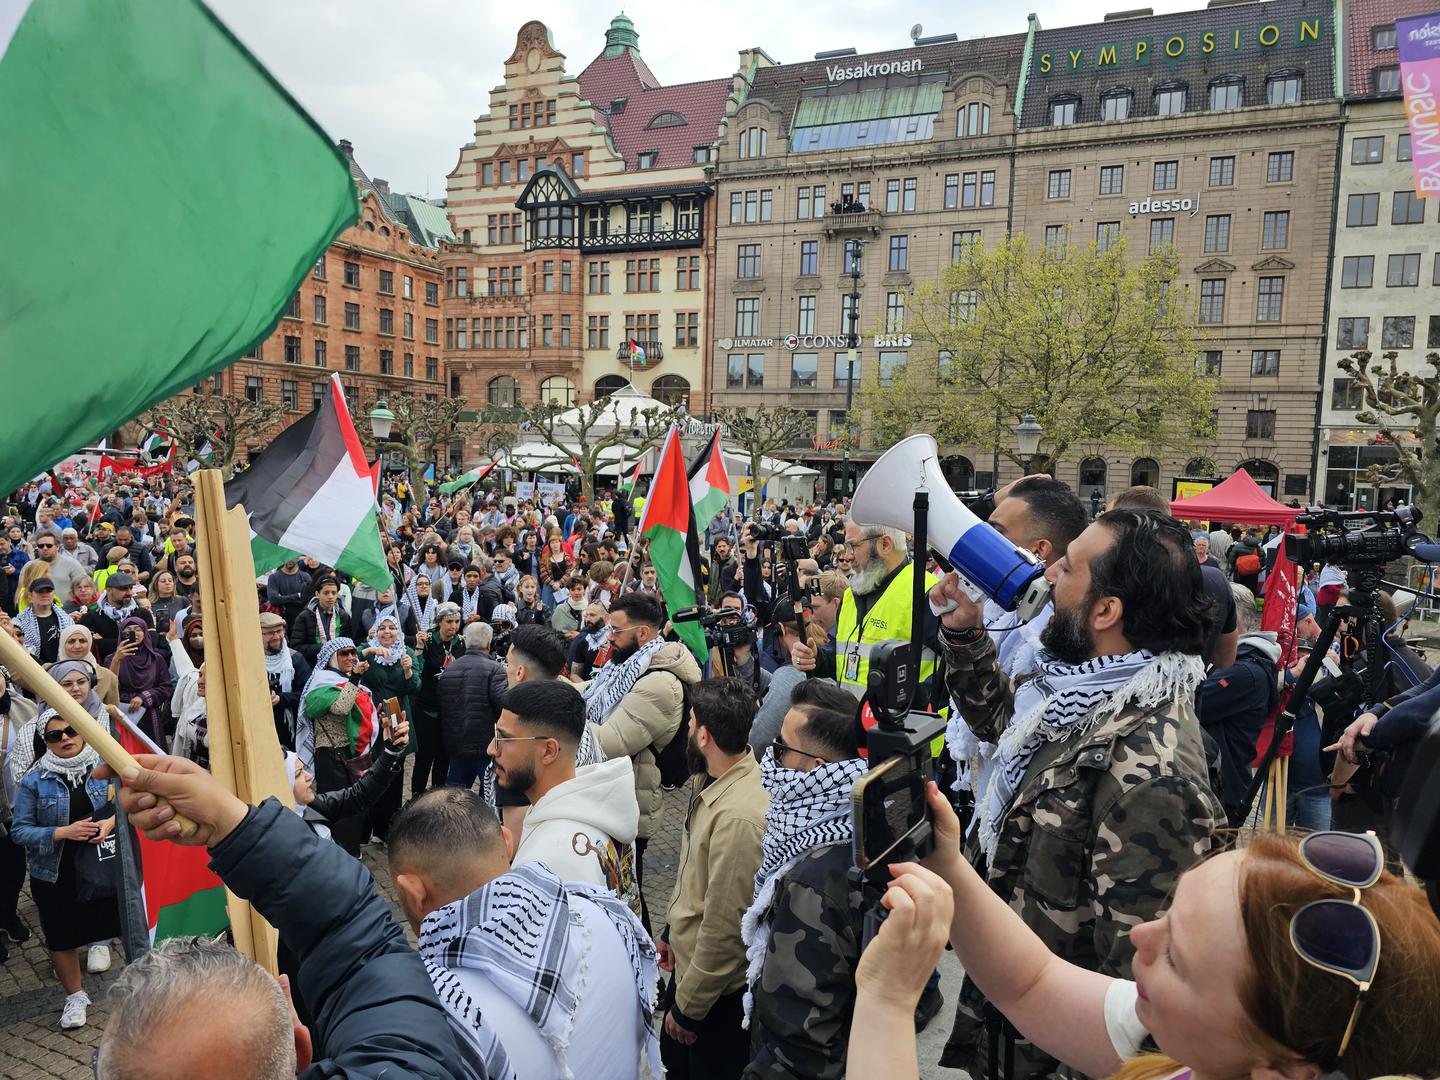 Okupilo se nekoliko tisuća prosvjednika i broj je rastao iz minute u minutu, što se može vidjeti i po fotografijama.

